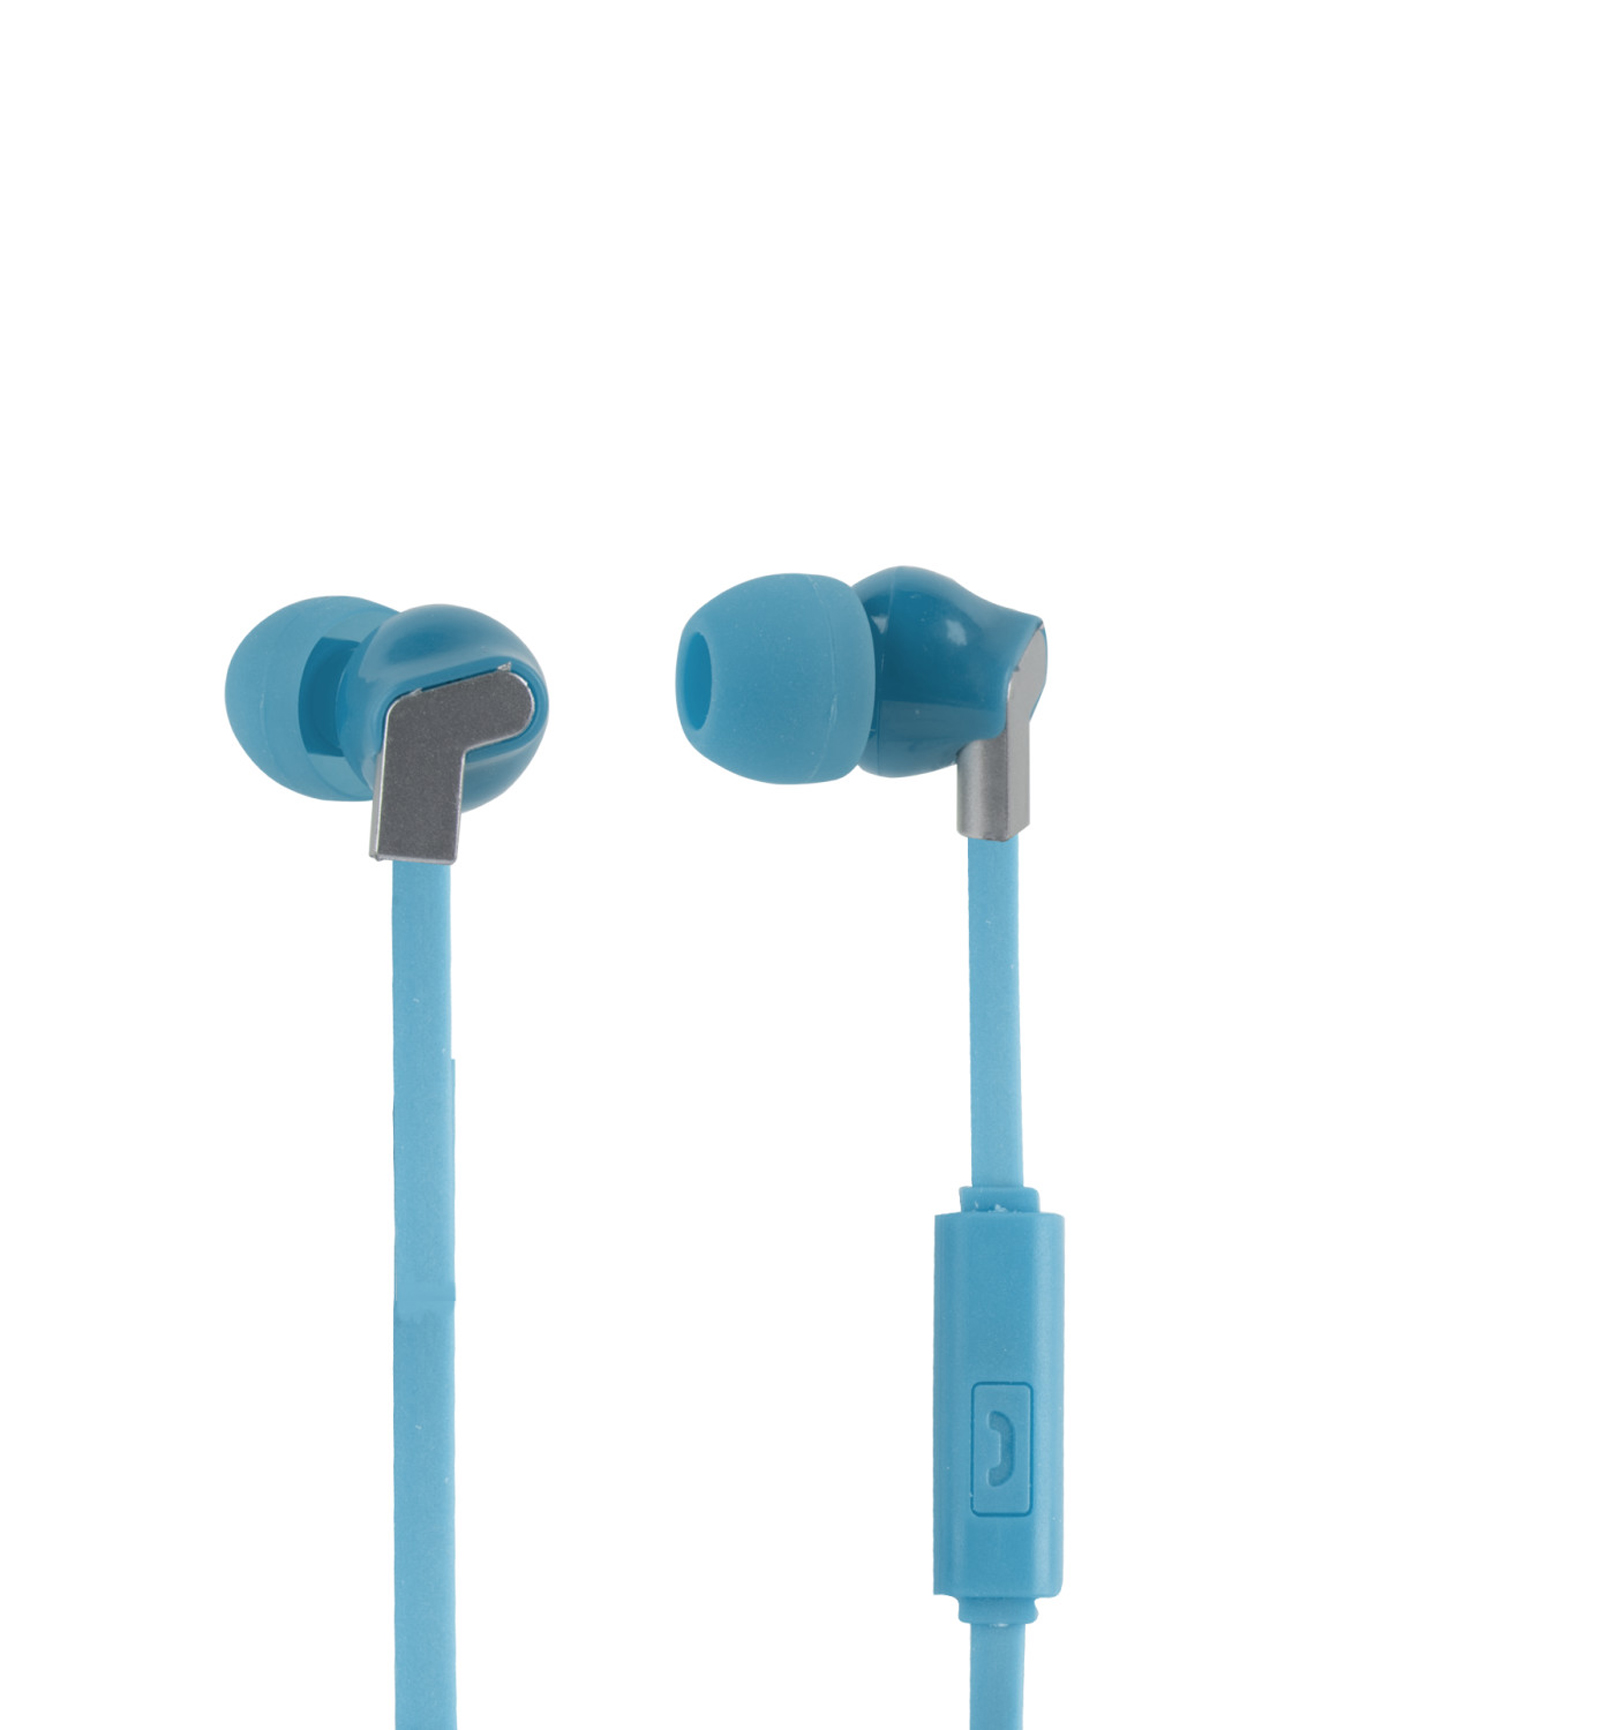 Vivitar VCB40011-BLU-KM Chrome Earbuds - Bright Blue